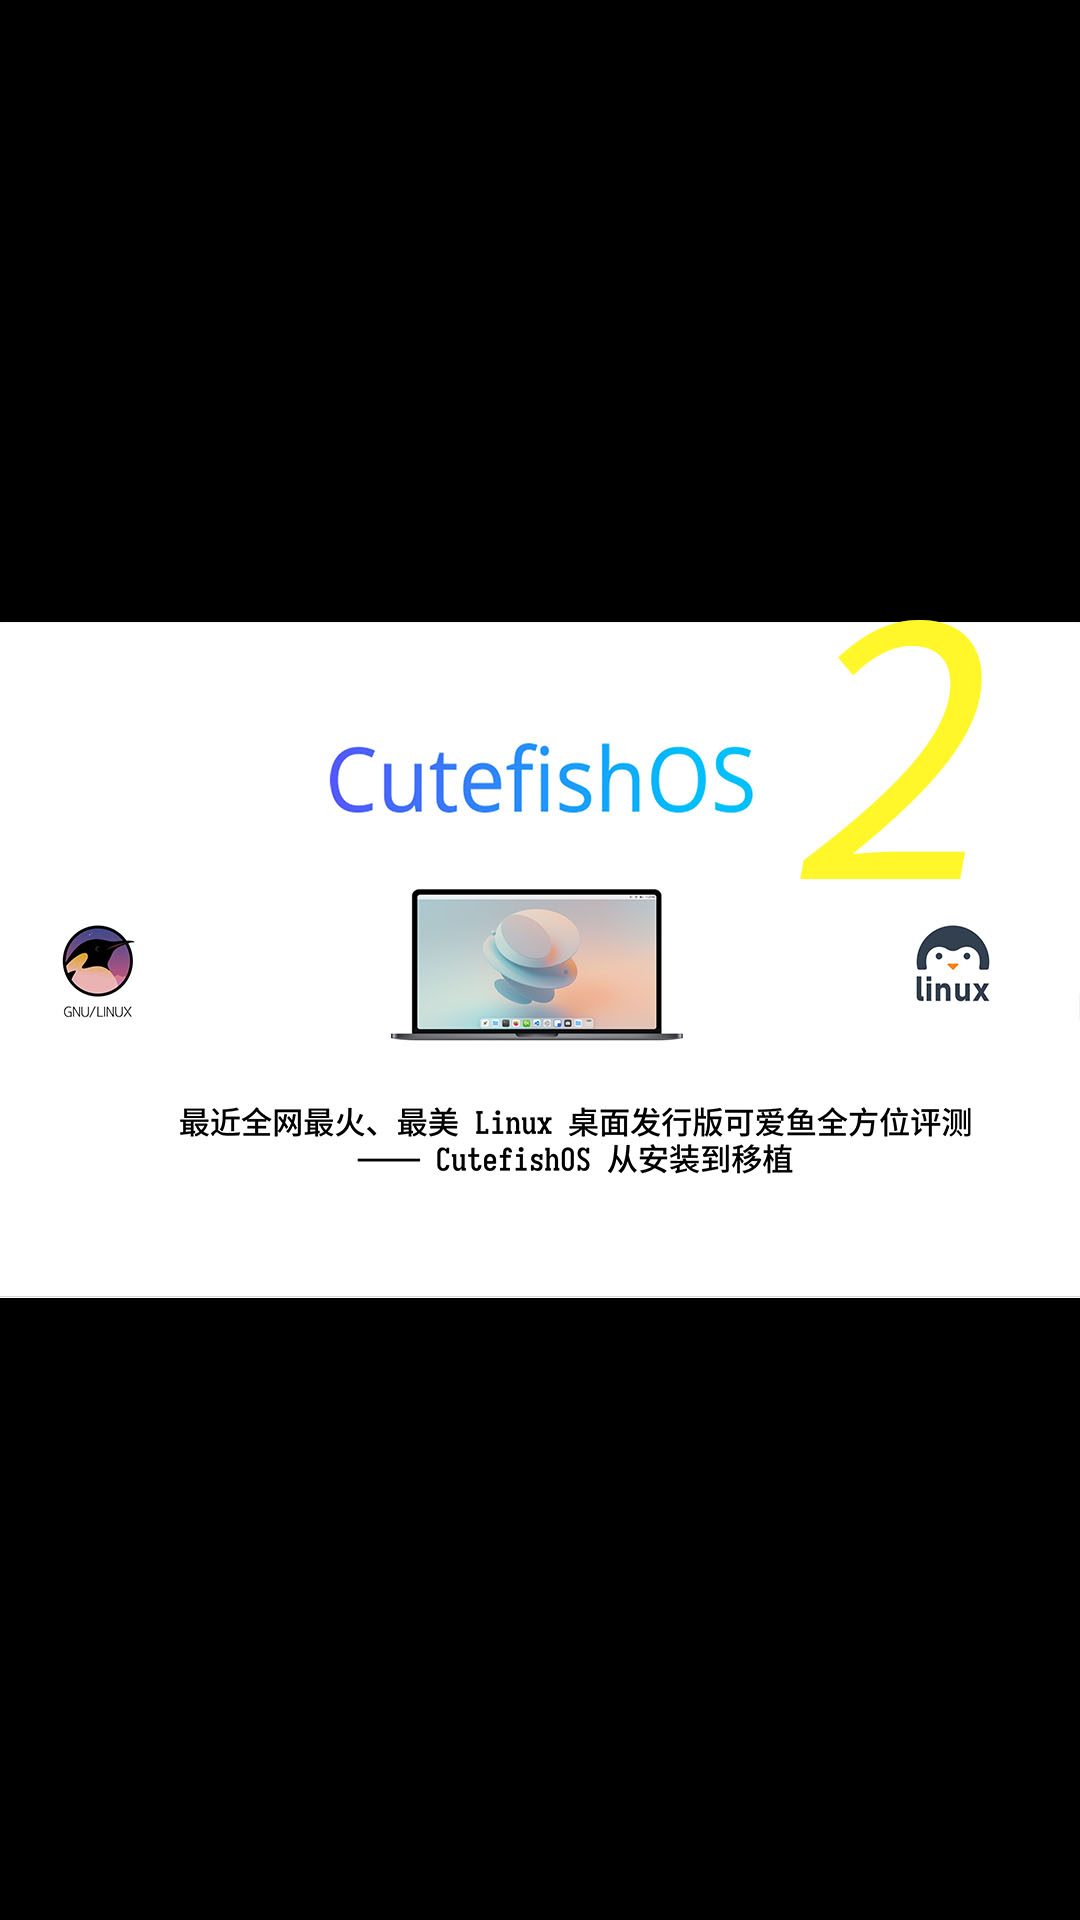 最近全网最火、最美观的 Linux 桌面发行版可爱鱼系统全方位评测——CutefishOS 从安装使用到移植测